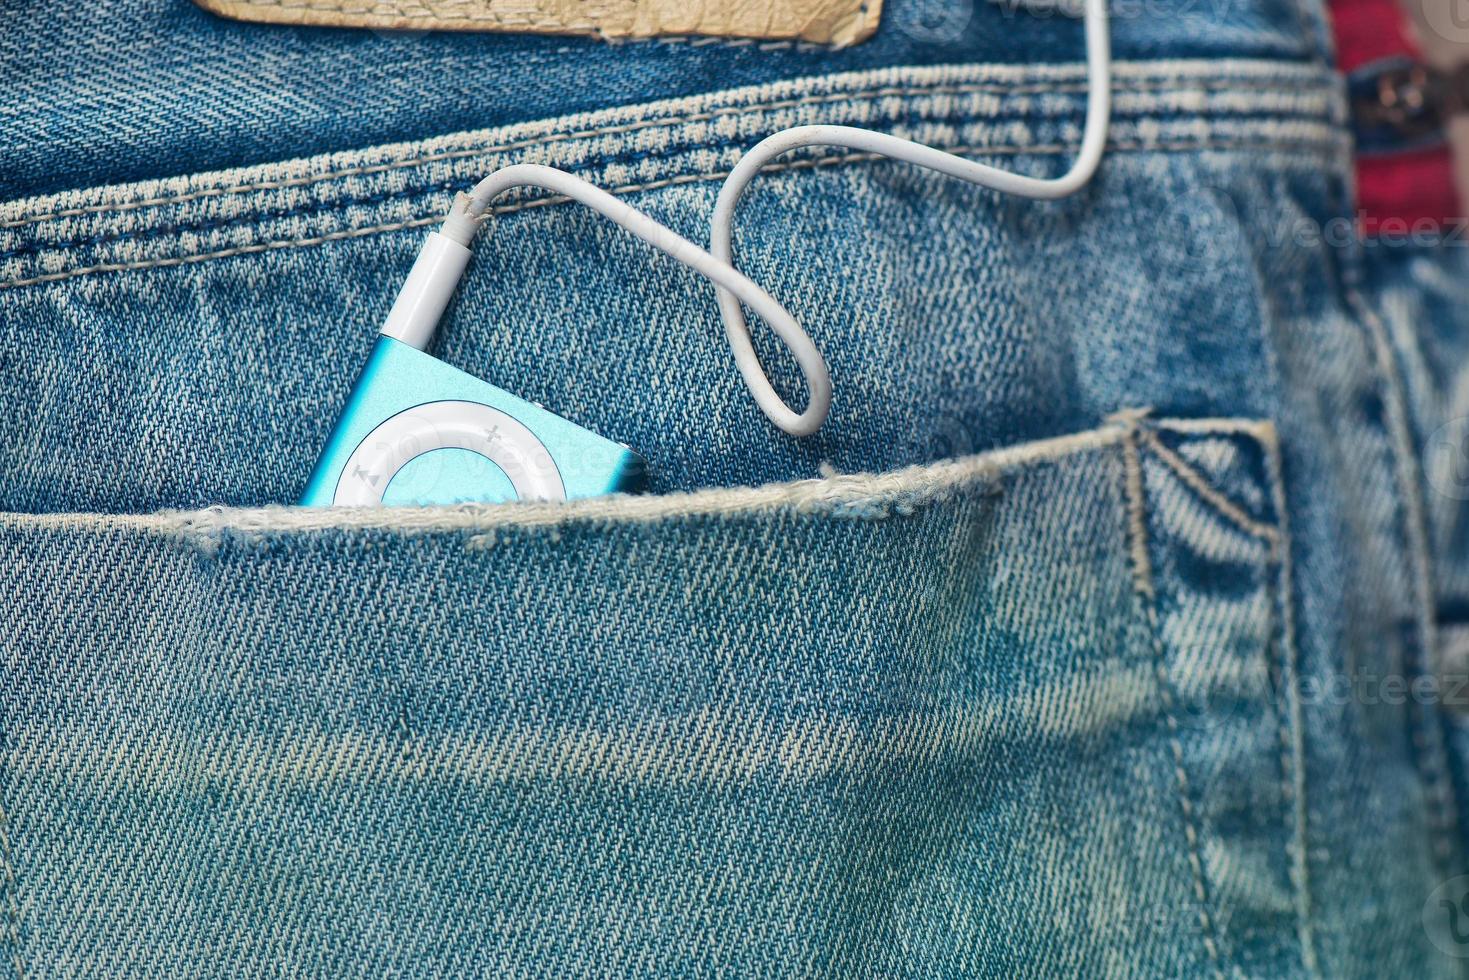 lecteur mp3 dans la poche du jean photo